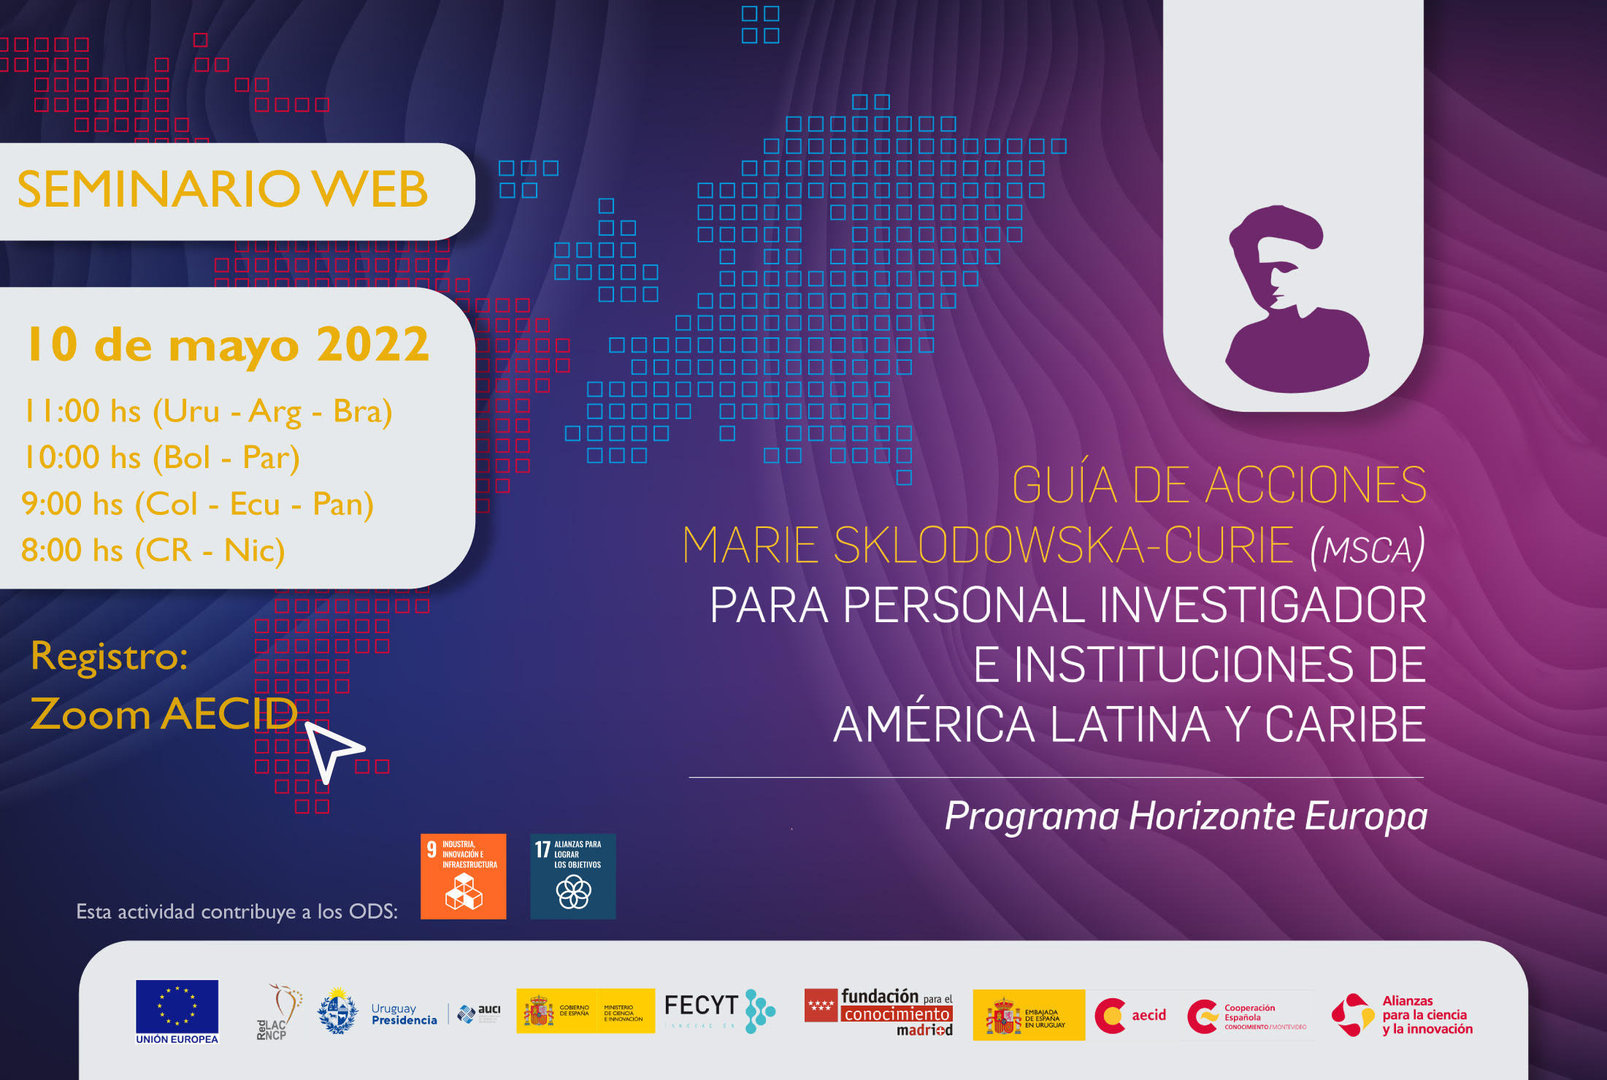 Seminario Web, "Guia de Acciones Marie Sklodowska - Curie (MSCA) para personal Investigador e Instituciones América Latina y el Caribe" 